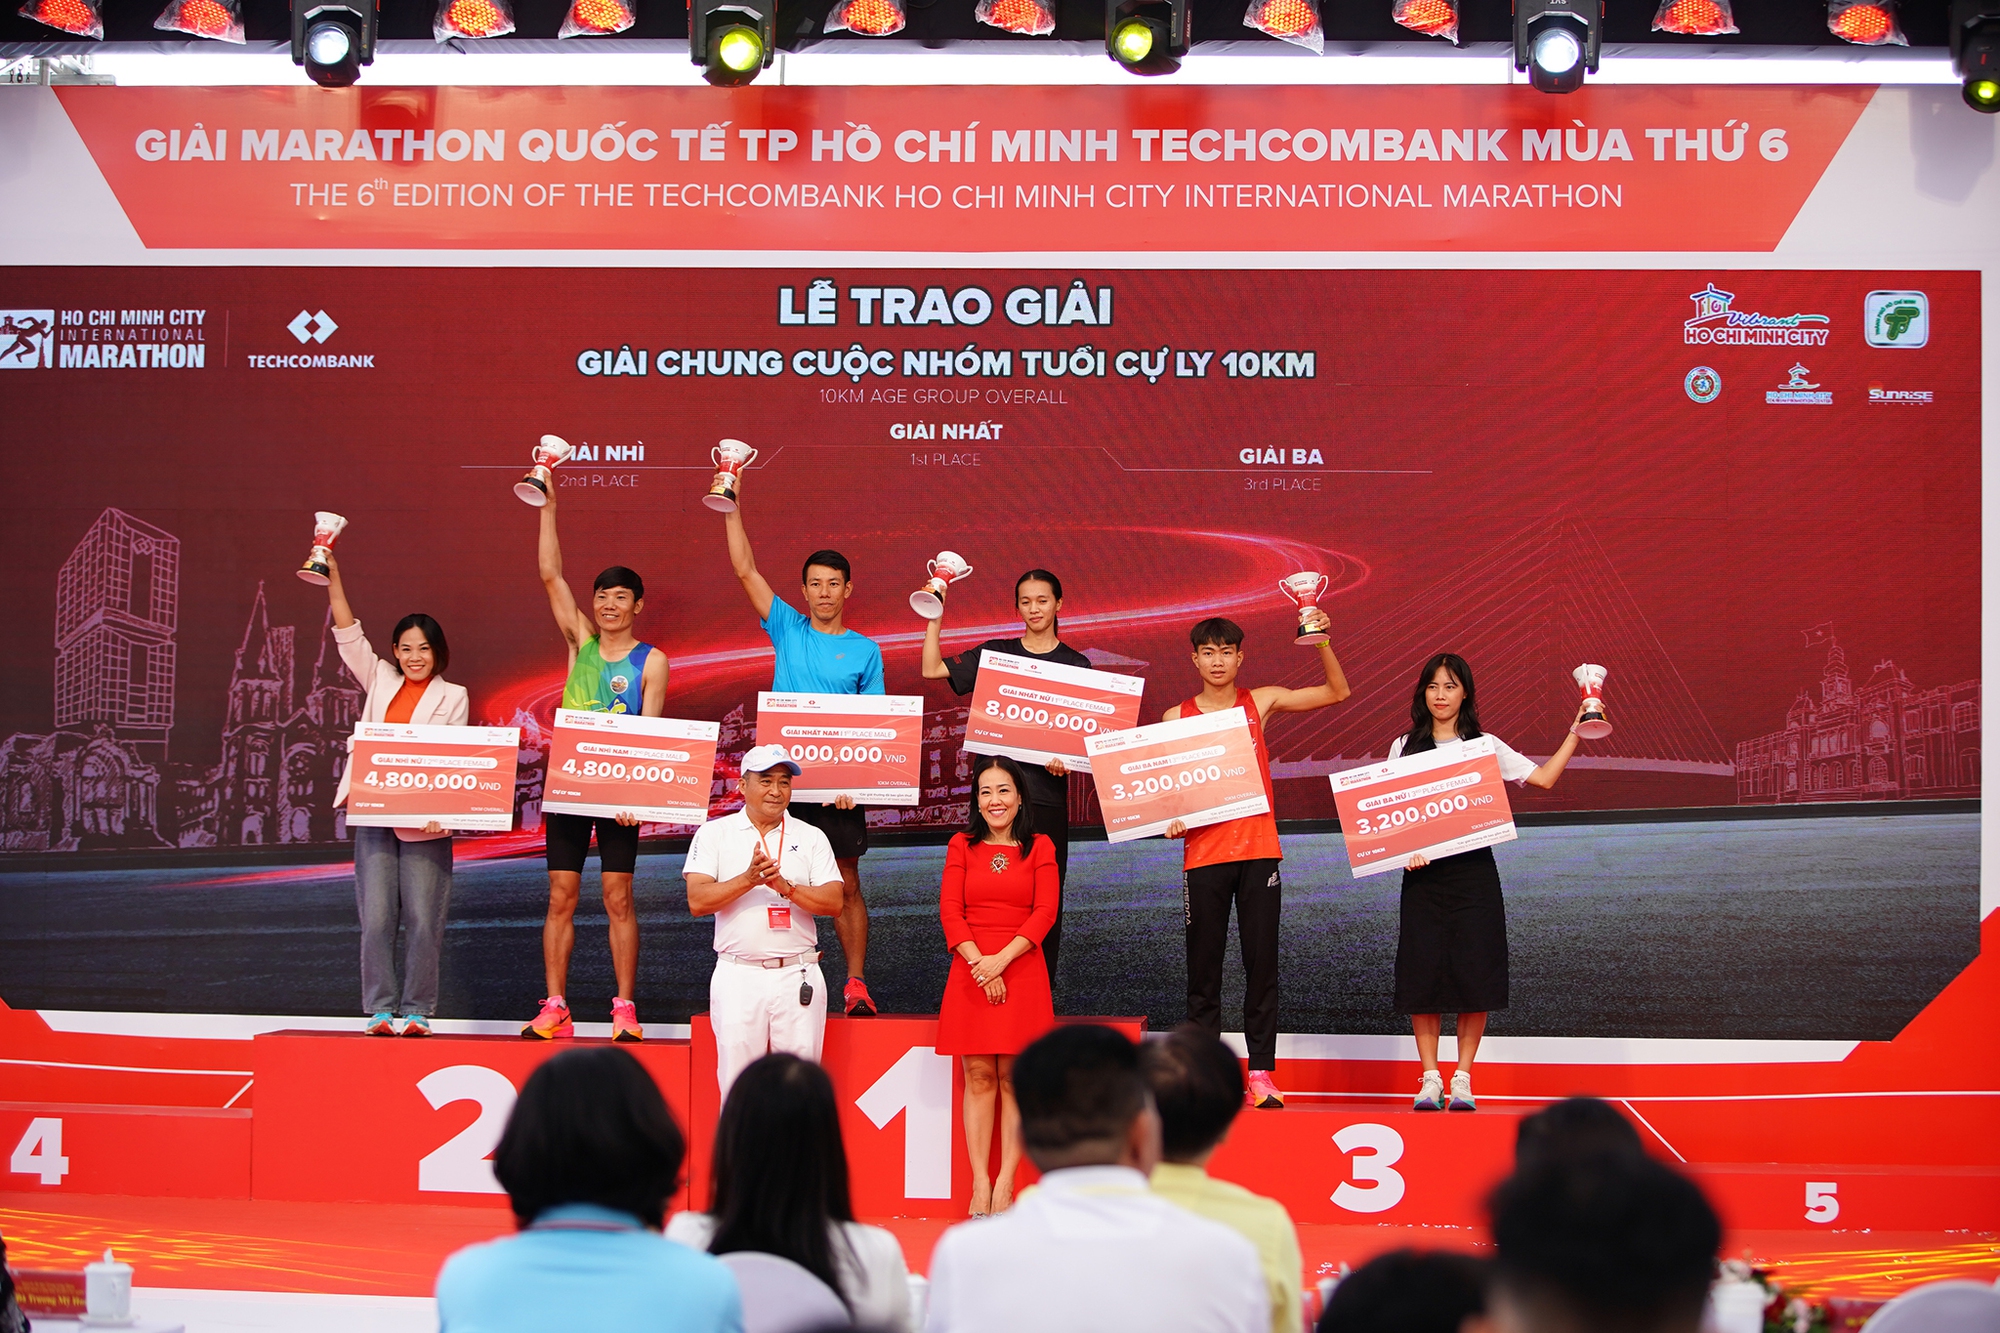 Các nữ Runner Việt Nam vượt trội trong giải Marathon Quốc tế thành phố Hồ Chí Minh Techcombank mùa thứ 6- Ảnh 10.